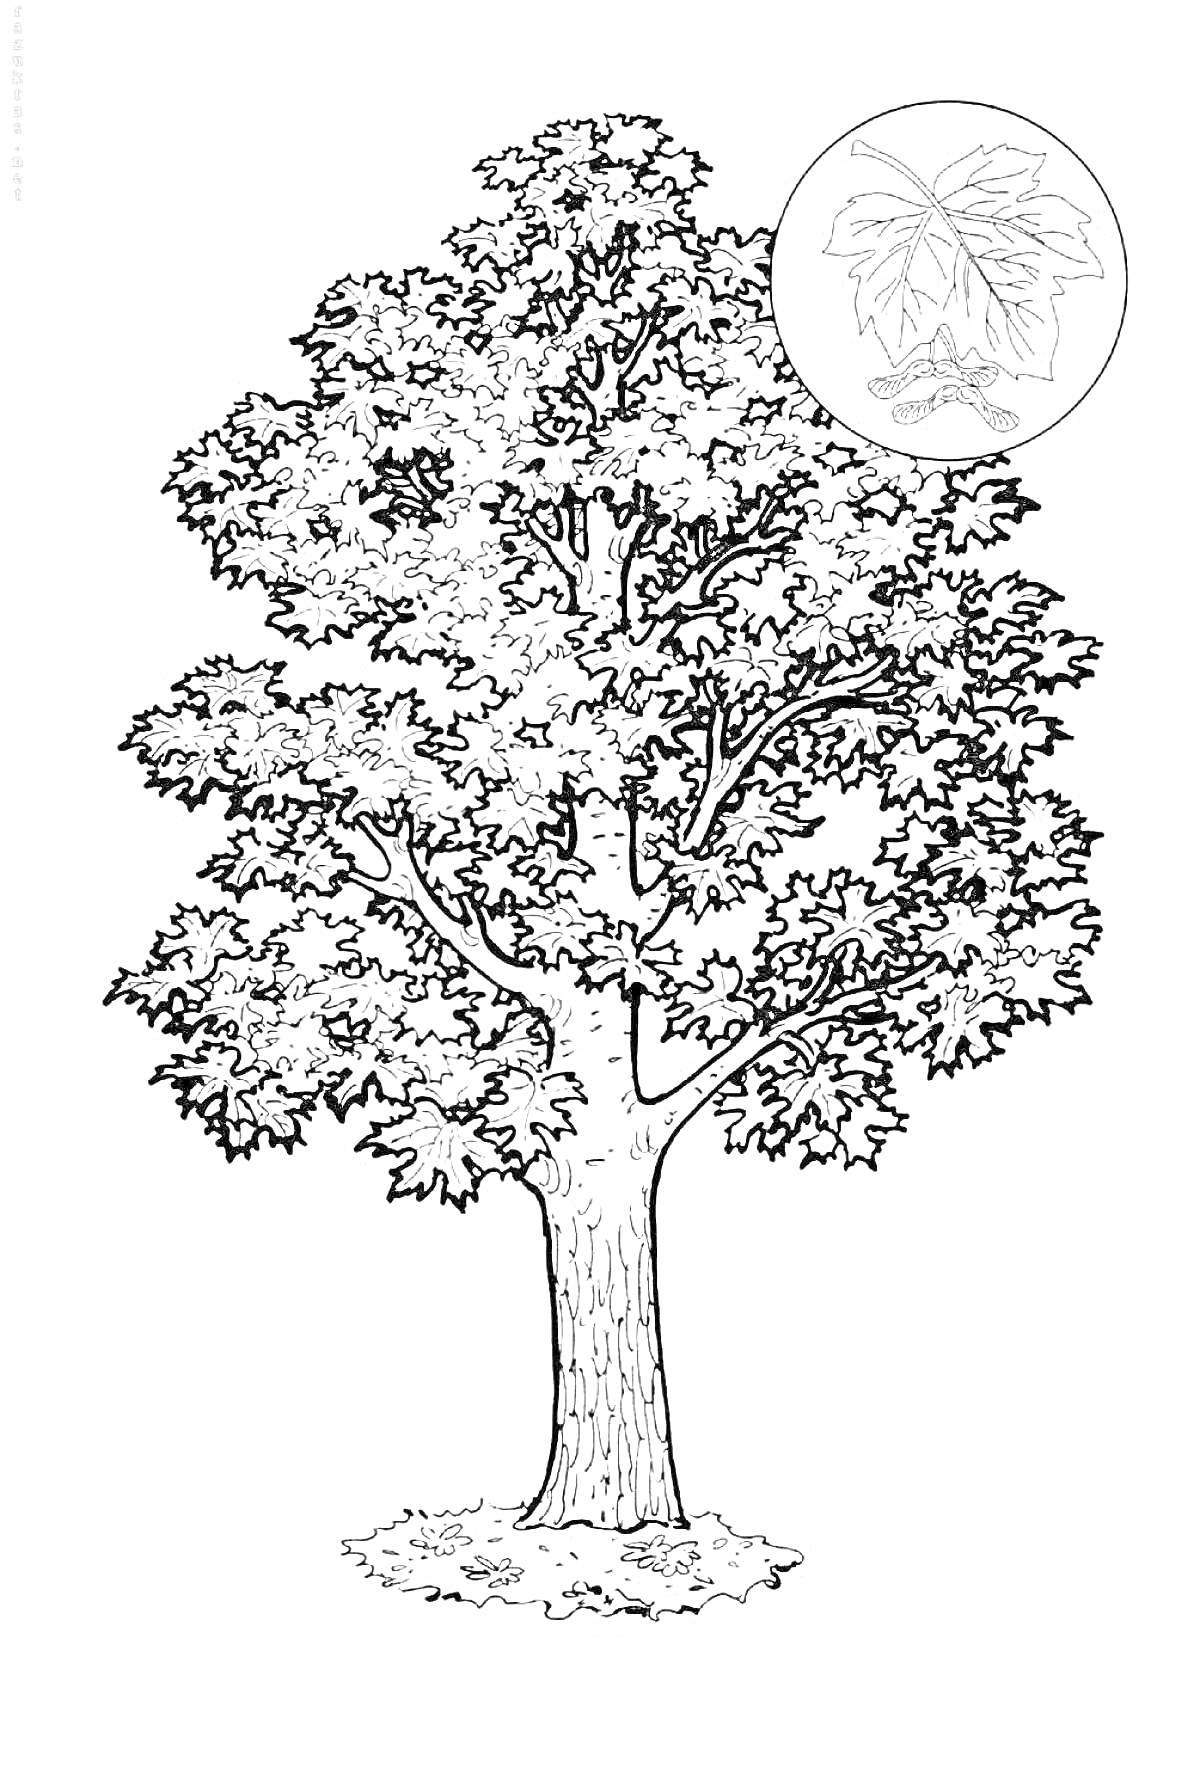 Кленовое дерево с листом и плодом в круге